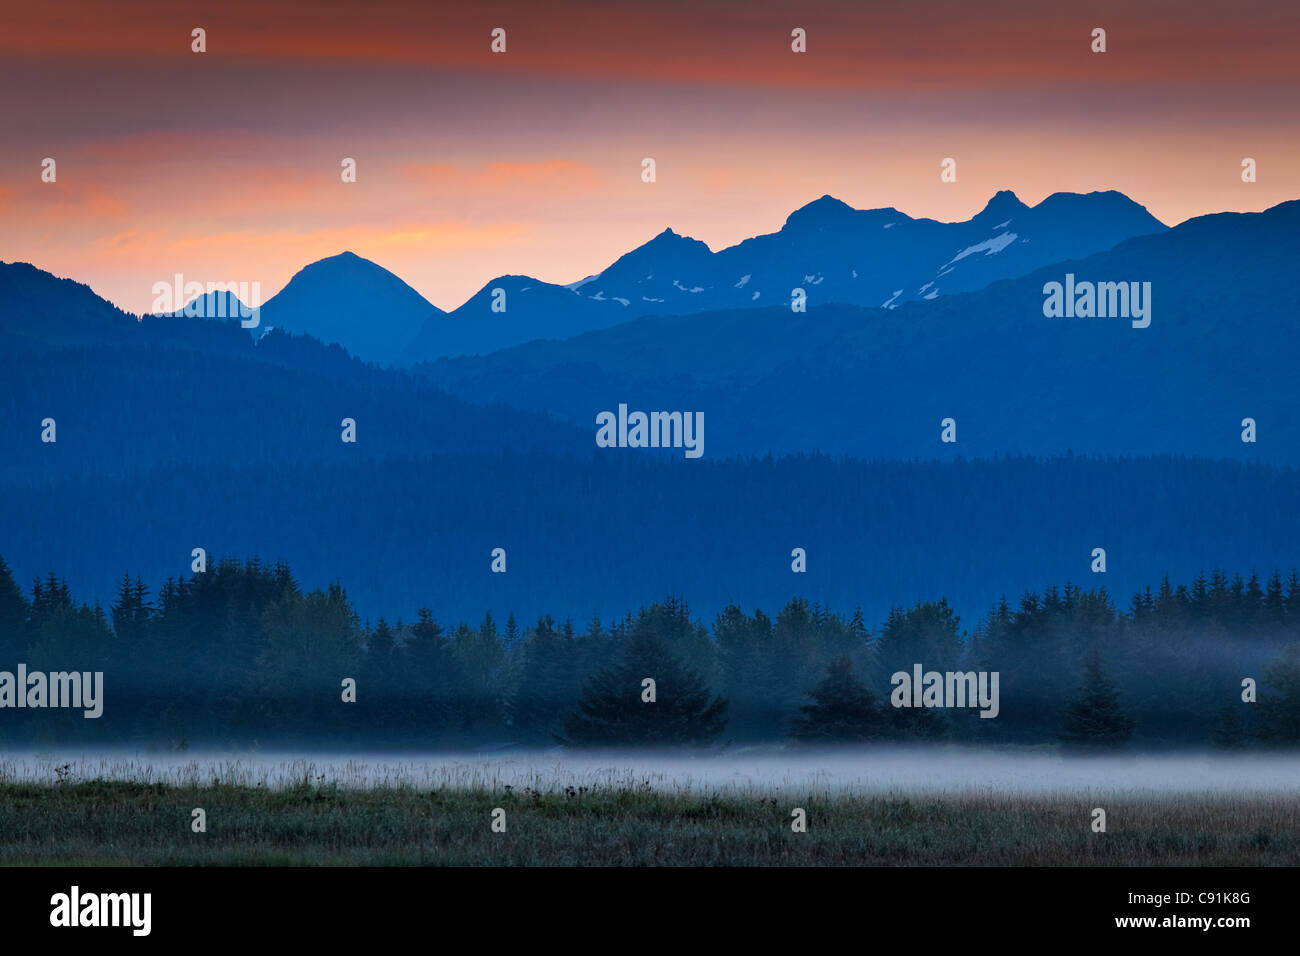 El paisaje de las montañas al amanecer y la niebla que flotan a través del suelo, el parque nacional de Glacier Bay & preservar, Alaska Foto de stock